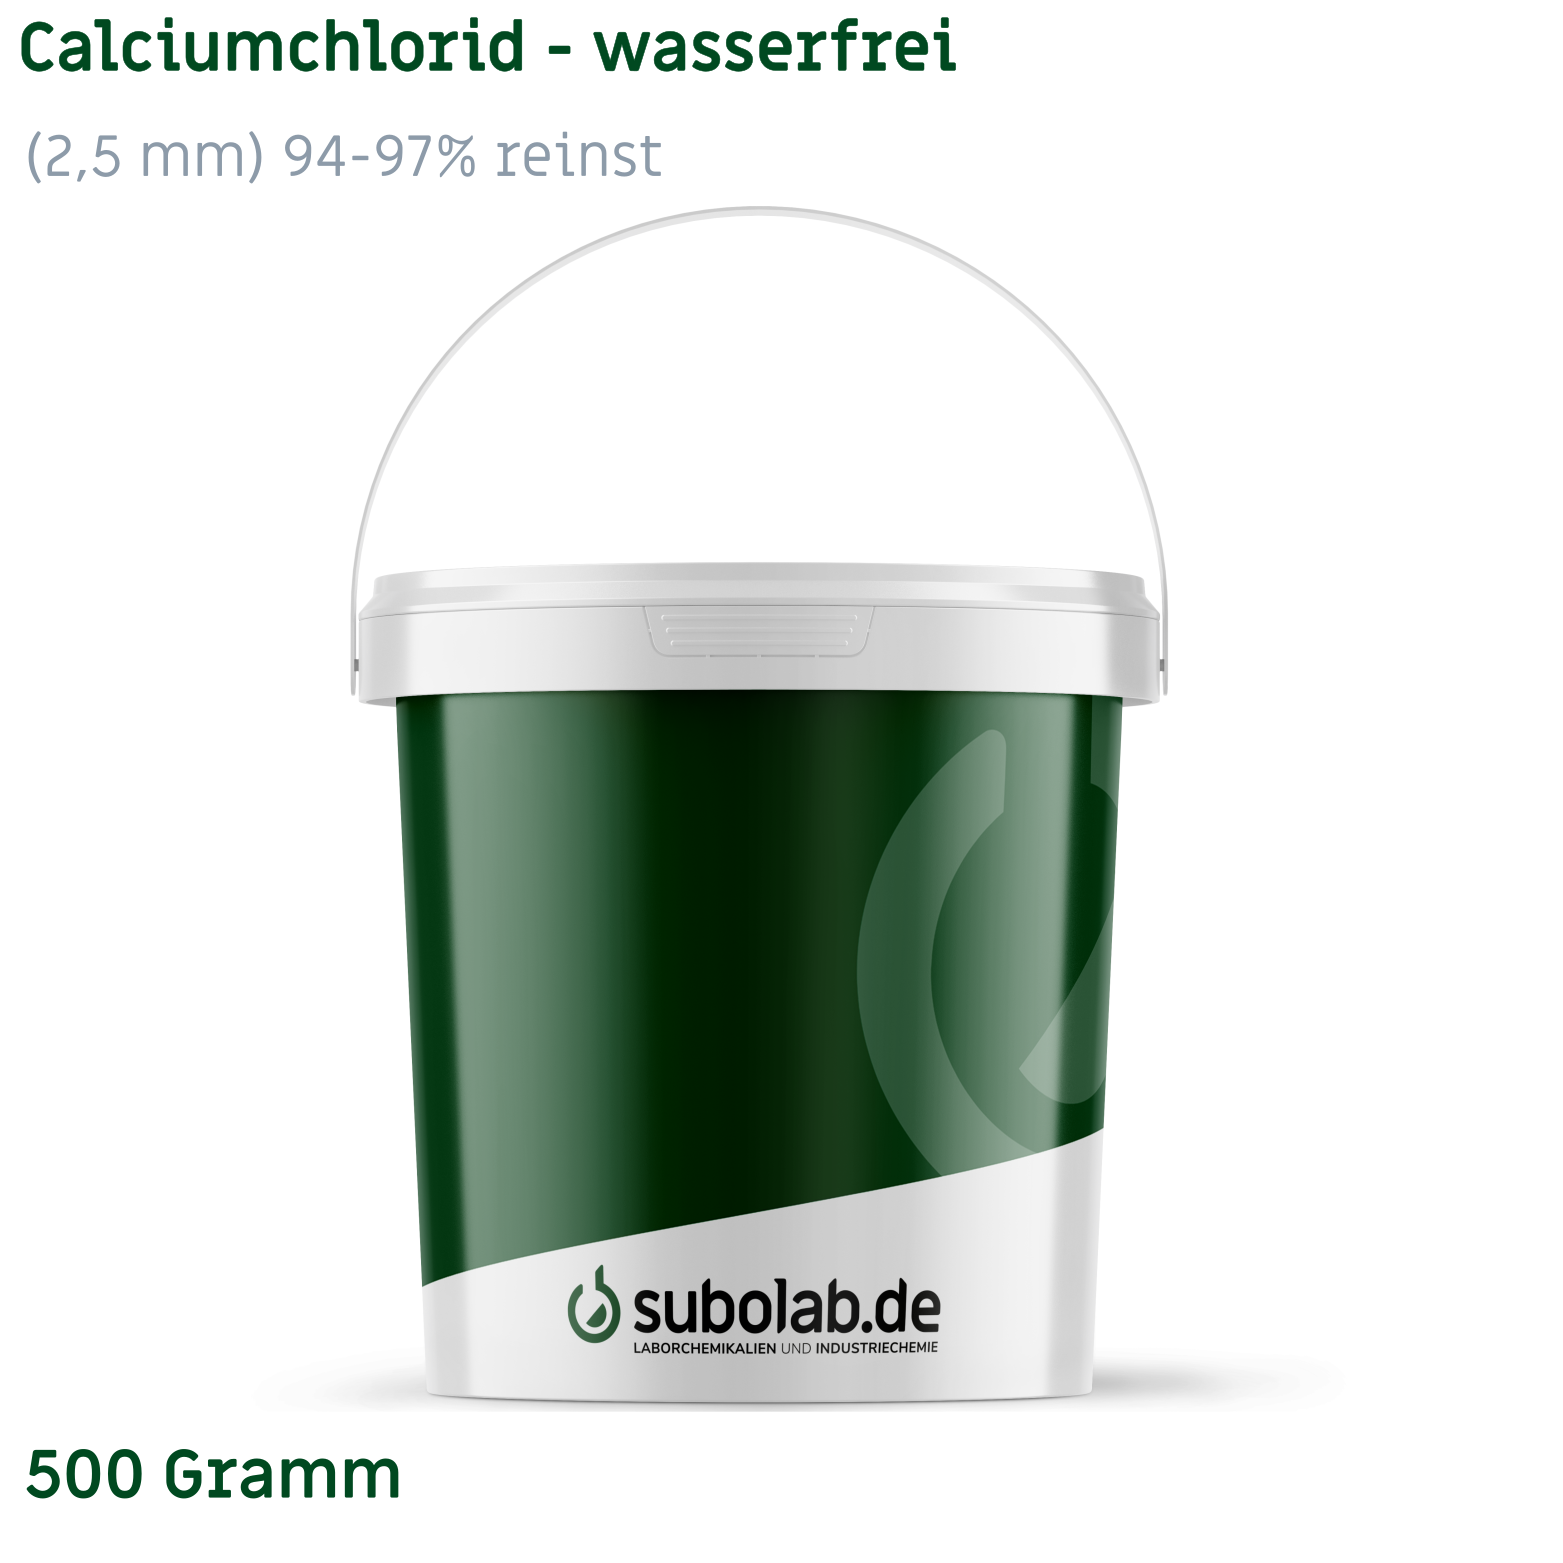 Bild von Calciumchlorid - wasserfrei gekörnt (2,5 mm) 94-97% reinst (500 Gramm)